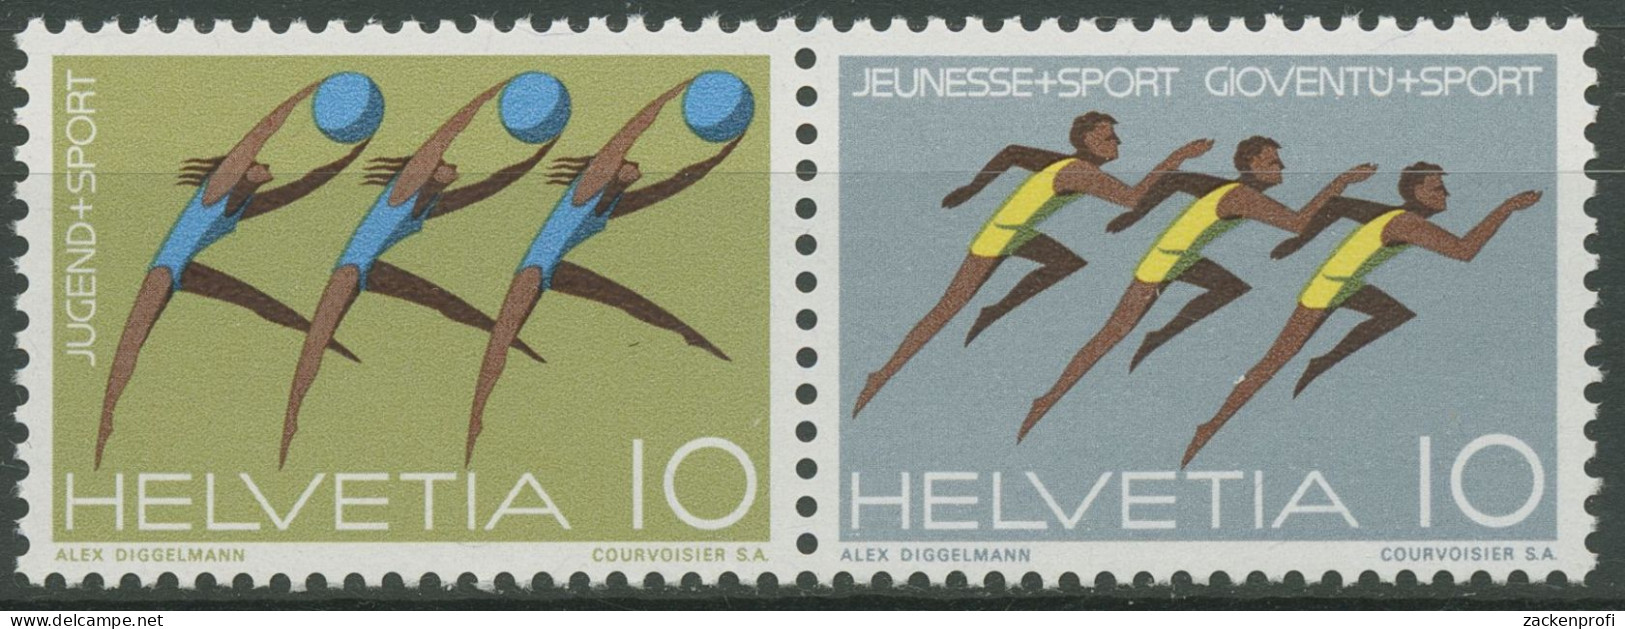 Schweiz 1971 Ereignisse Jugendsport 940/45 W ZD 15 Postfrisch - Unused Stamps